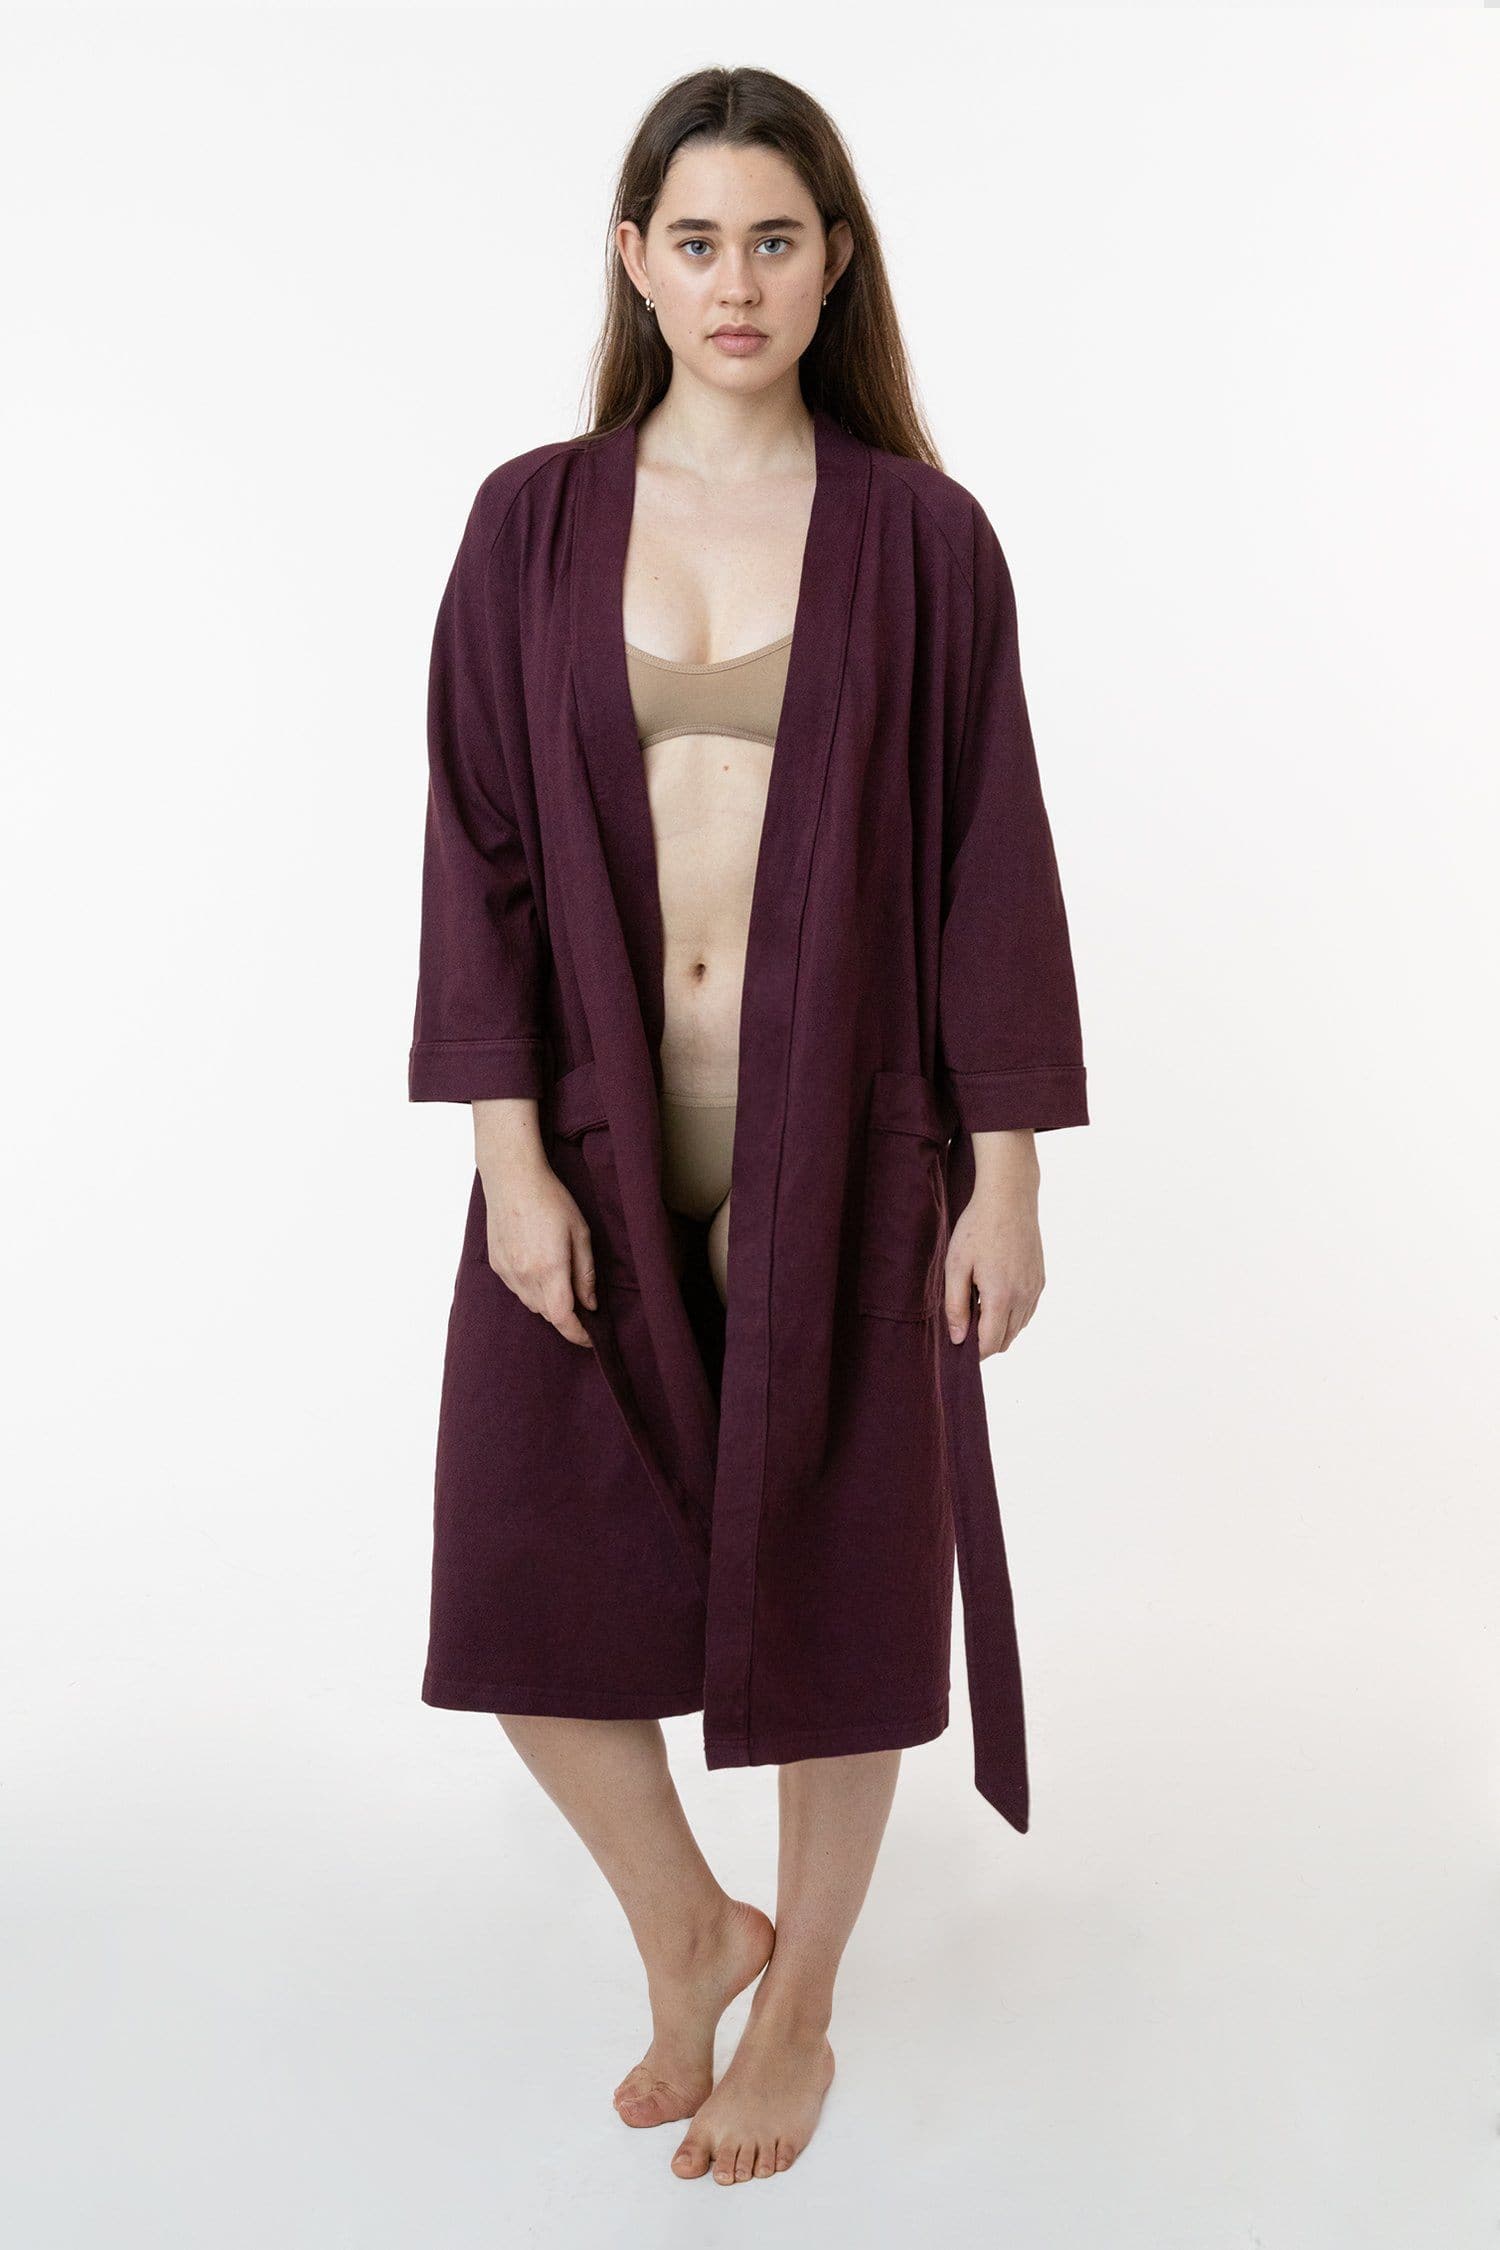 Bath Robes – Rags 2 Riches Apparel